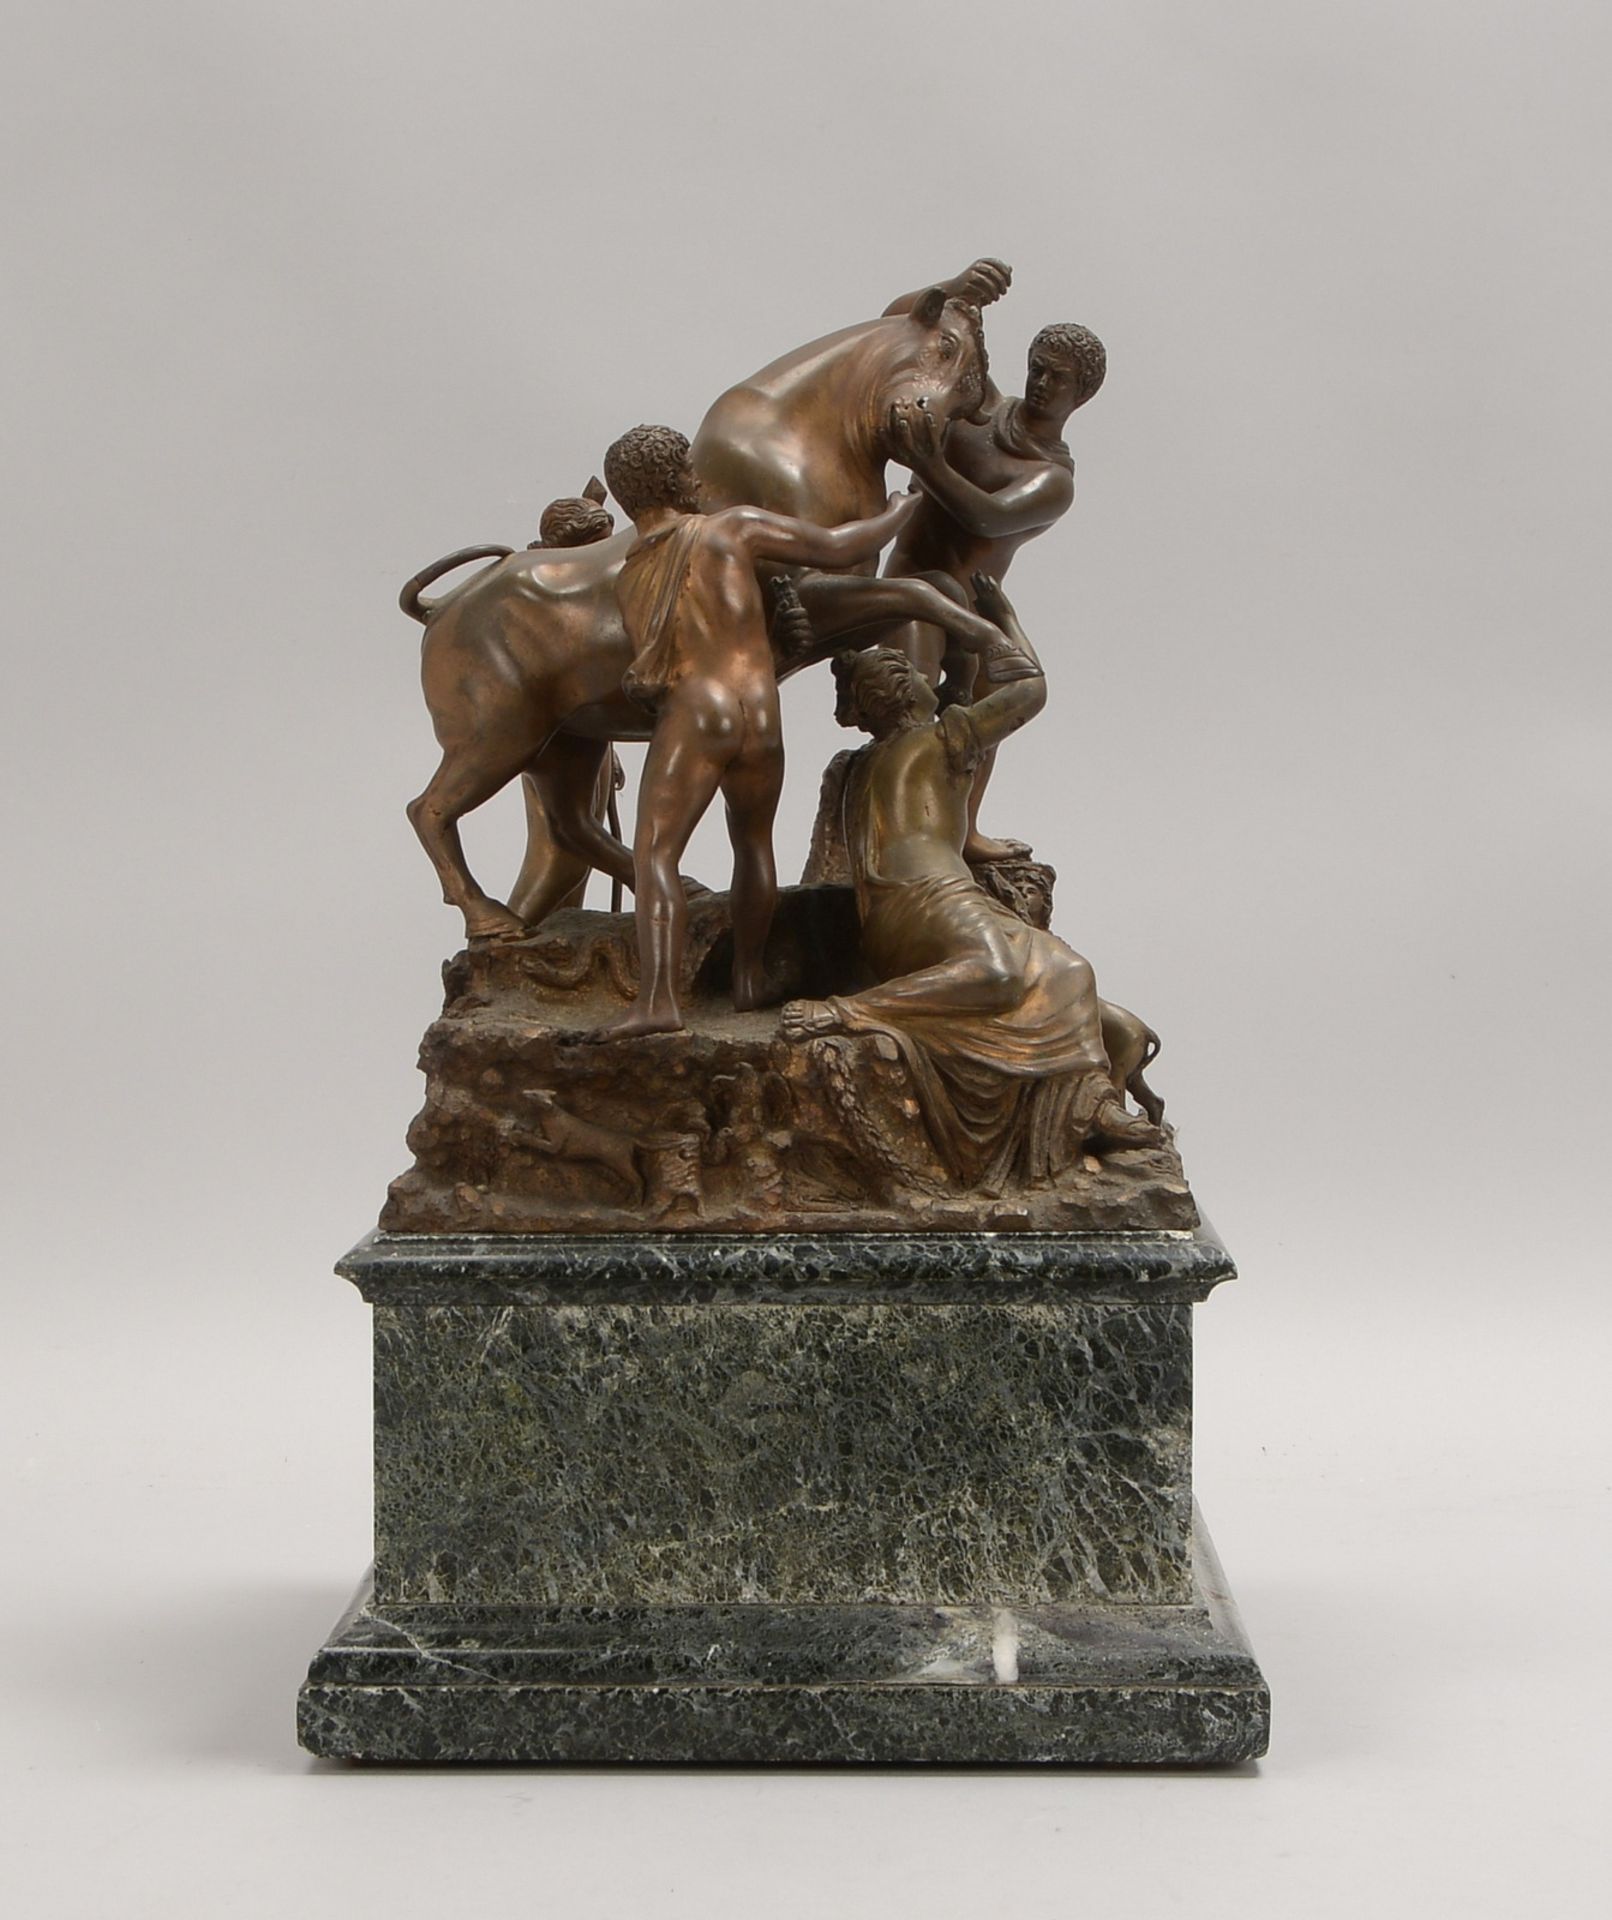 Bronze-Figurengruppe, 'Farnesischer Stier', lose auf schwerem Marmorsockel; Höhe 27 cm - Bild 2 aus 3